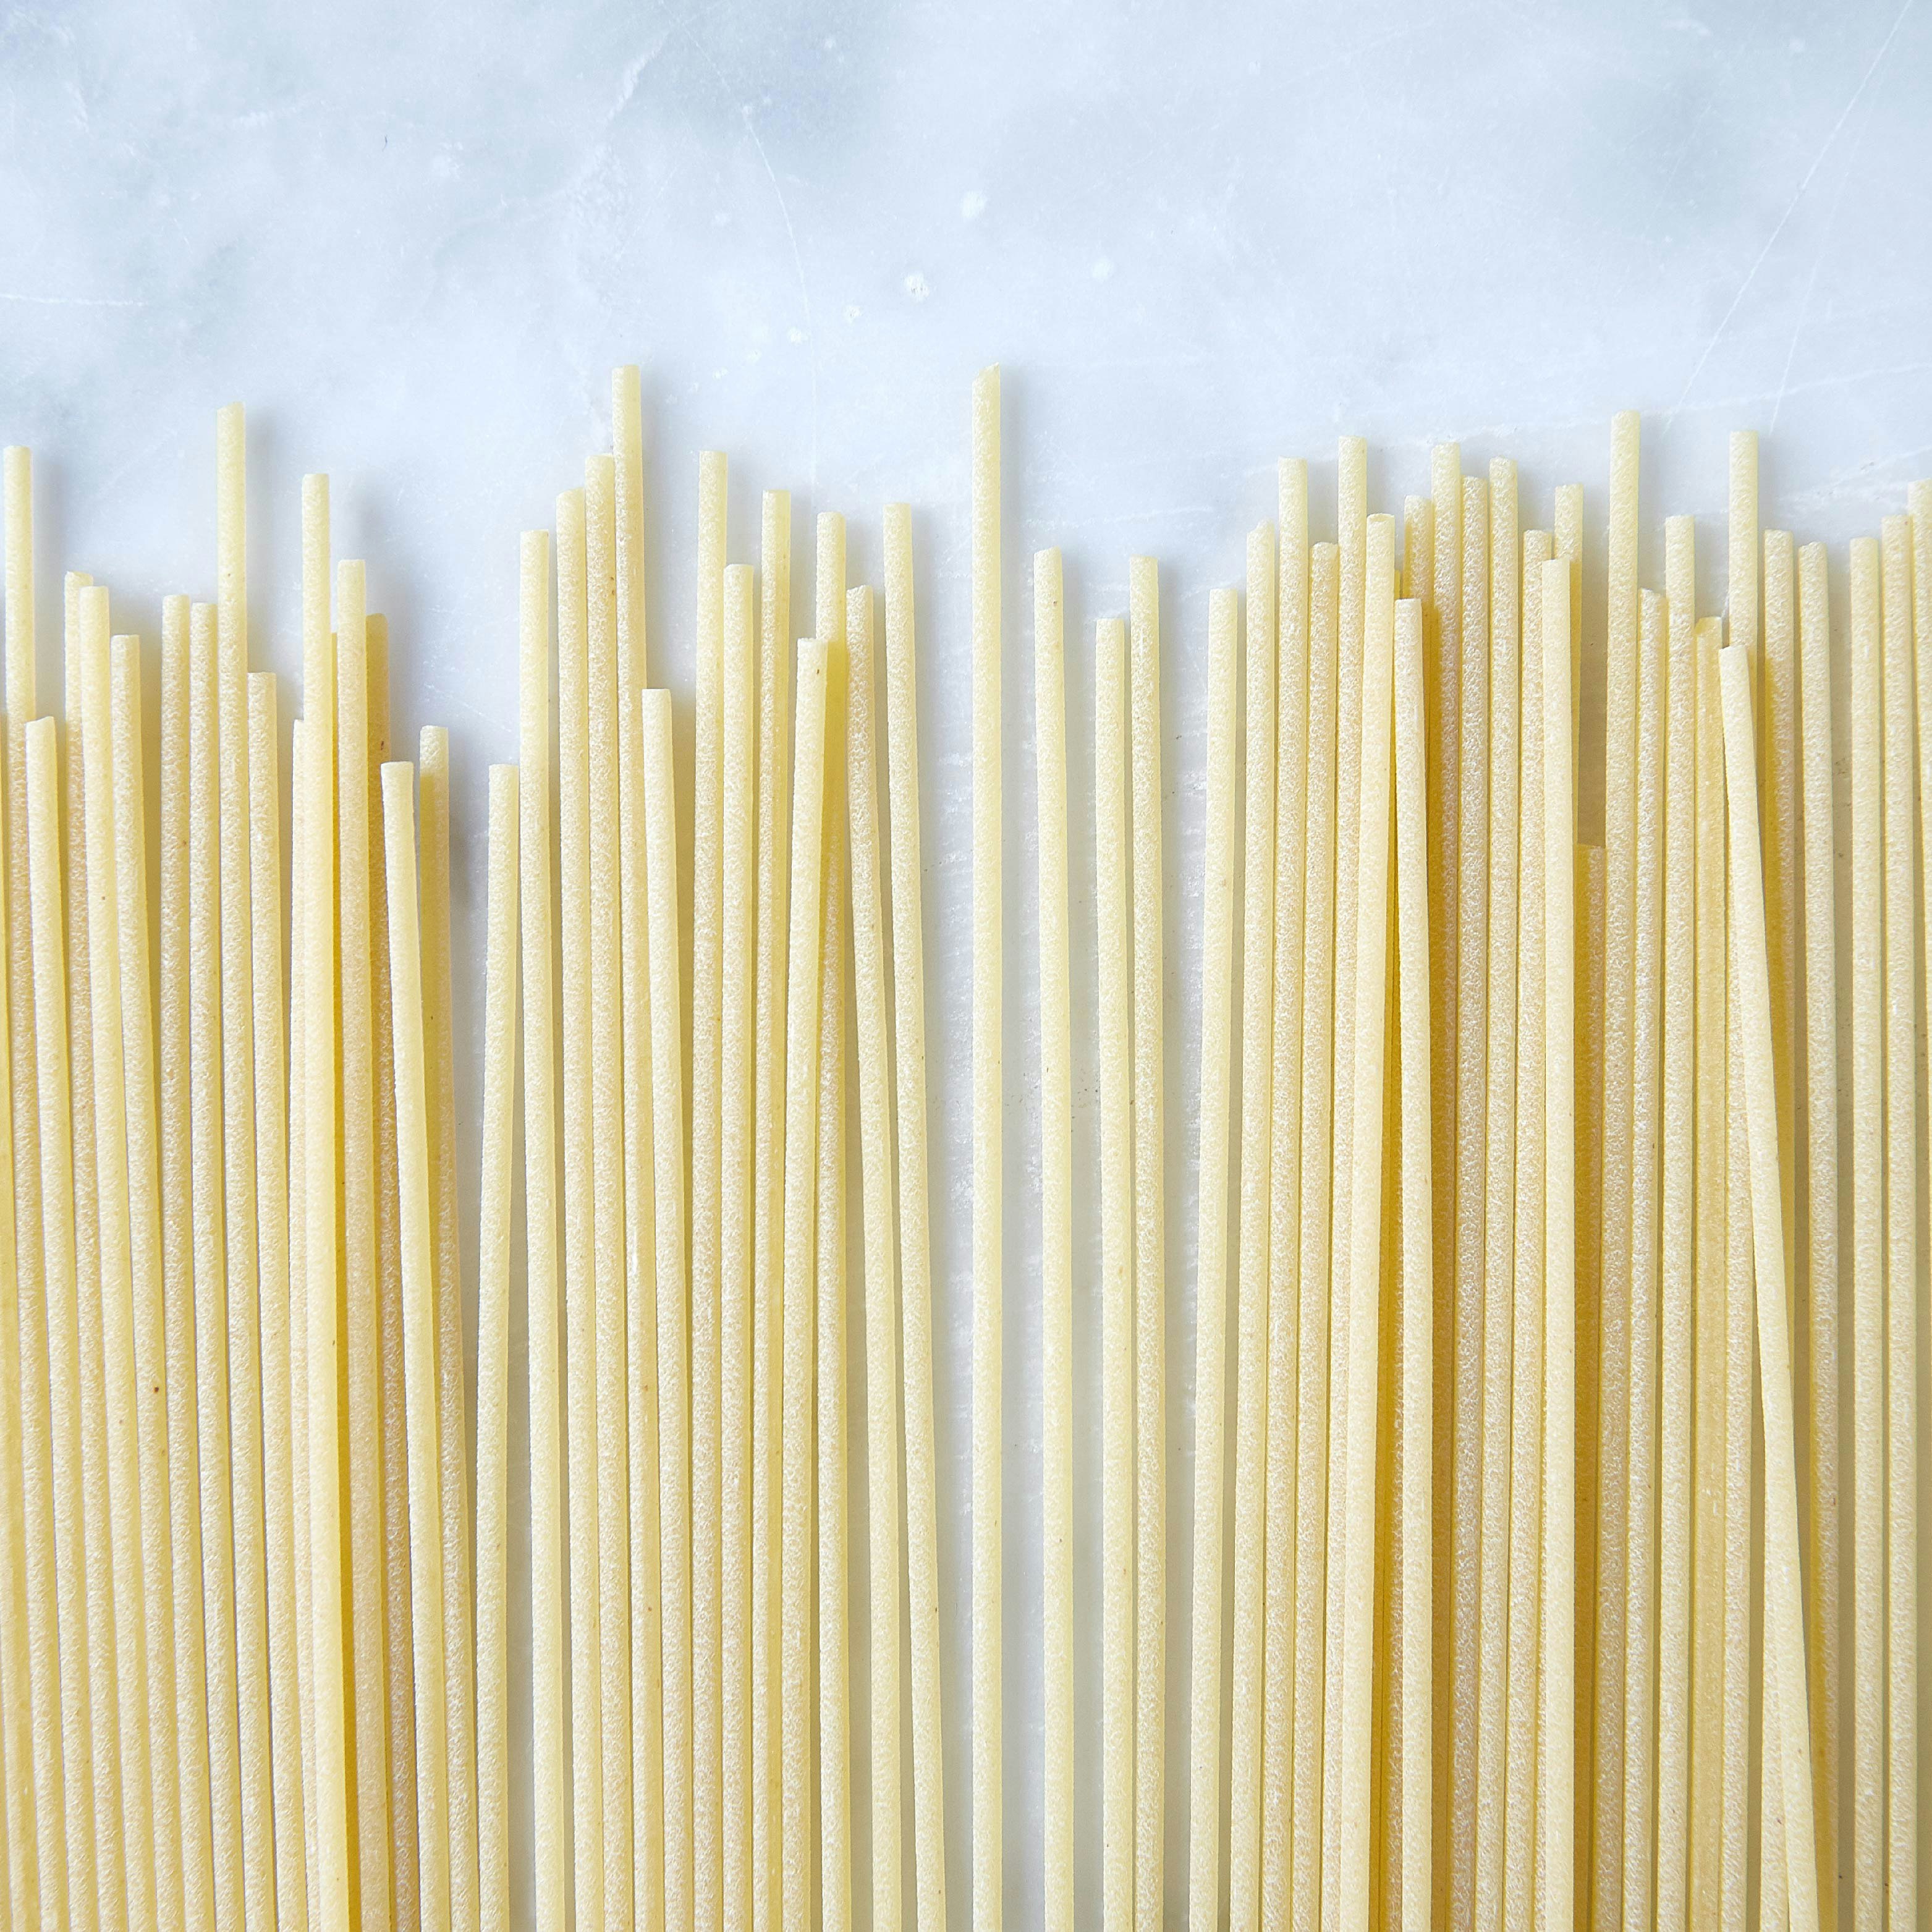 rustichella pasta spaghetti specialty foods